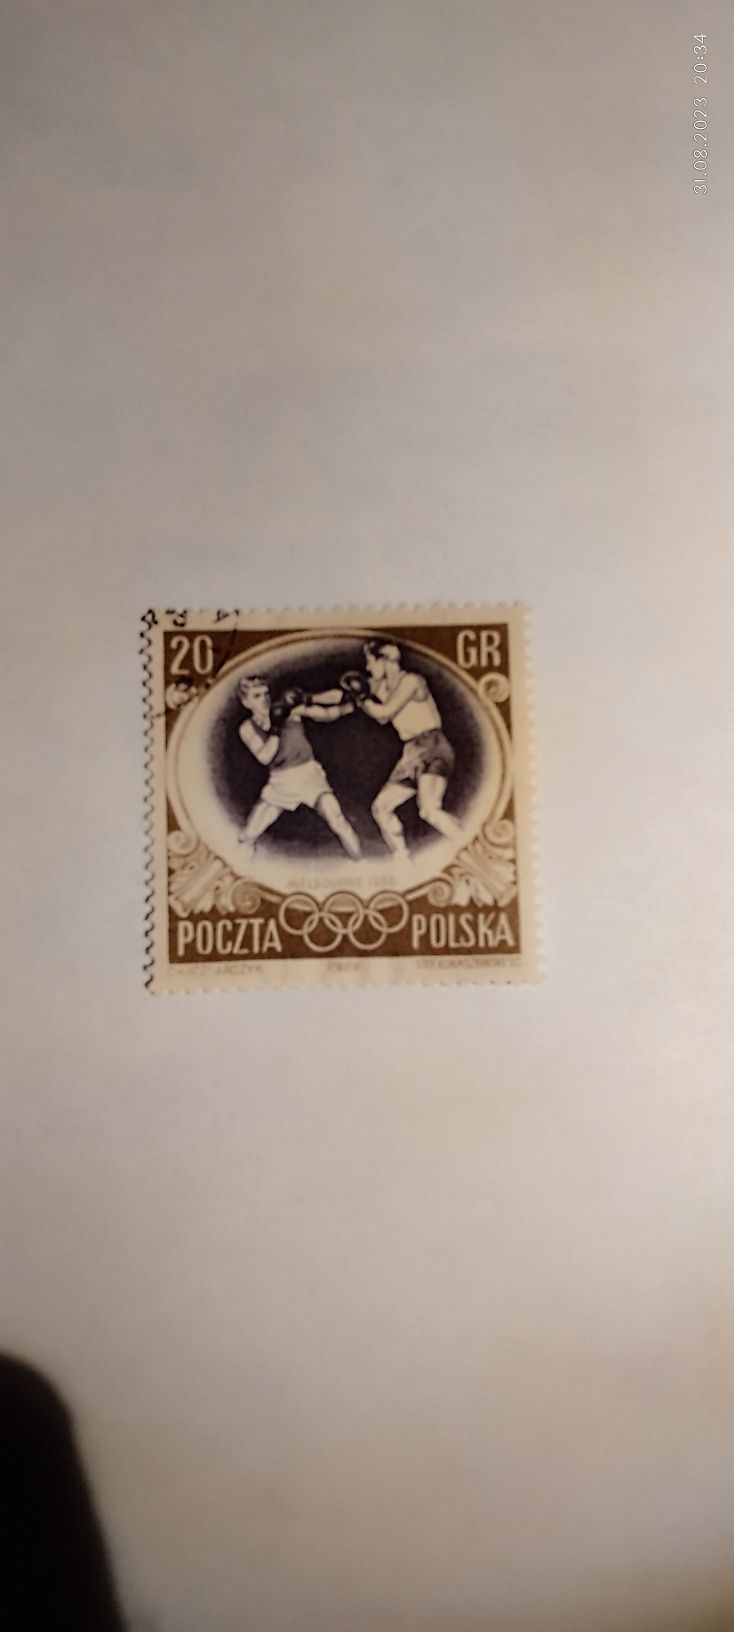 Znaczek pocztowy bokserzy z roku 1956